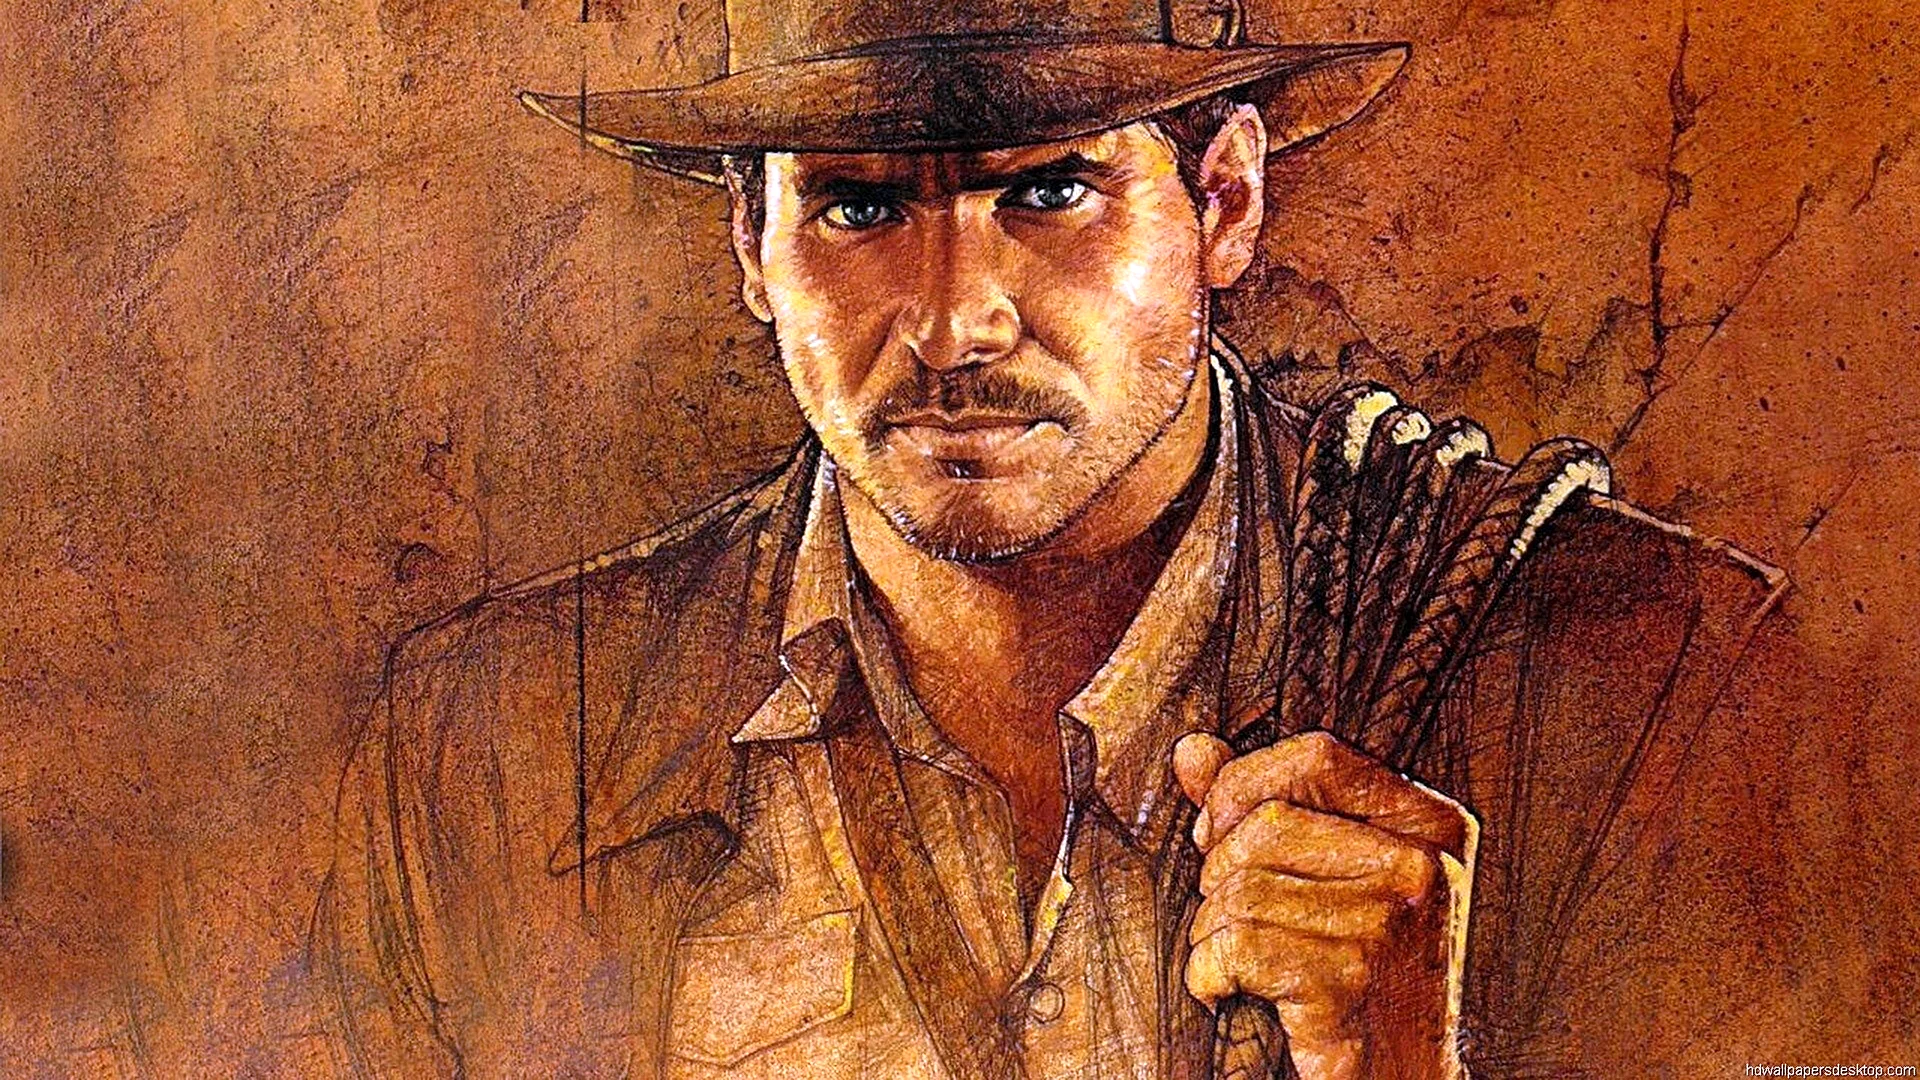 Indiana Jones Lost Ark Wallpaper